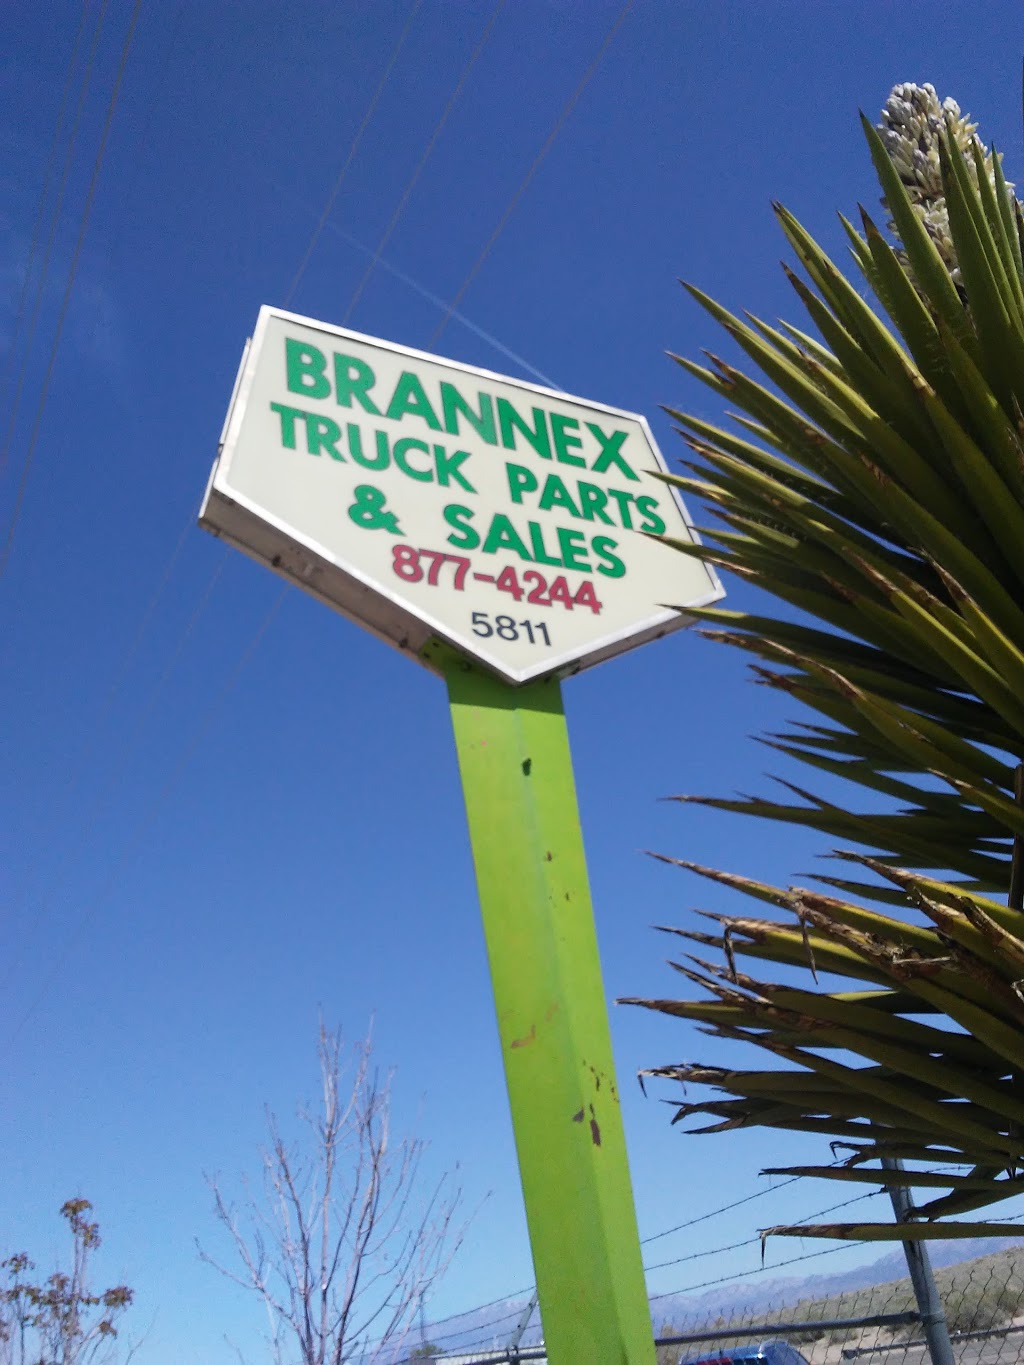 Brannex Truck Parts & Sales | 5811 Broadway Blvd SE, Albuquerque, NM 87105, USA | Phone: (505) 877-4244